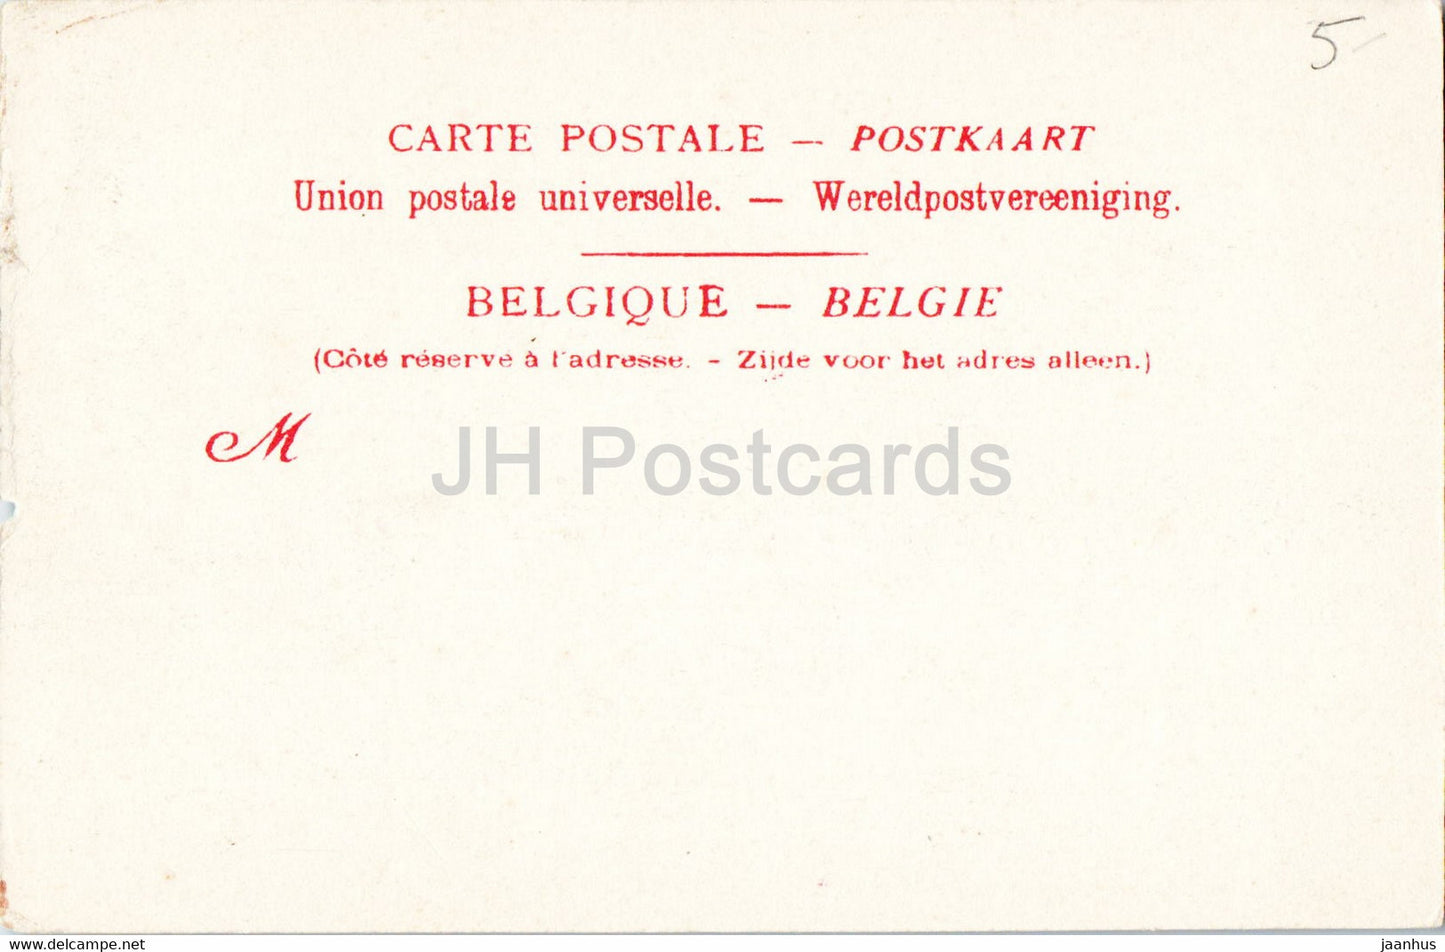 Gand - Gent - Le Casino - 21 - carte postale ancienne - Belgique - inutilisée